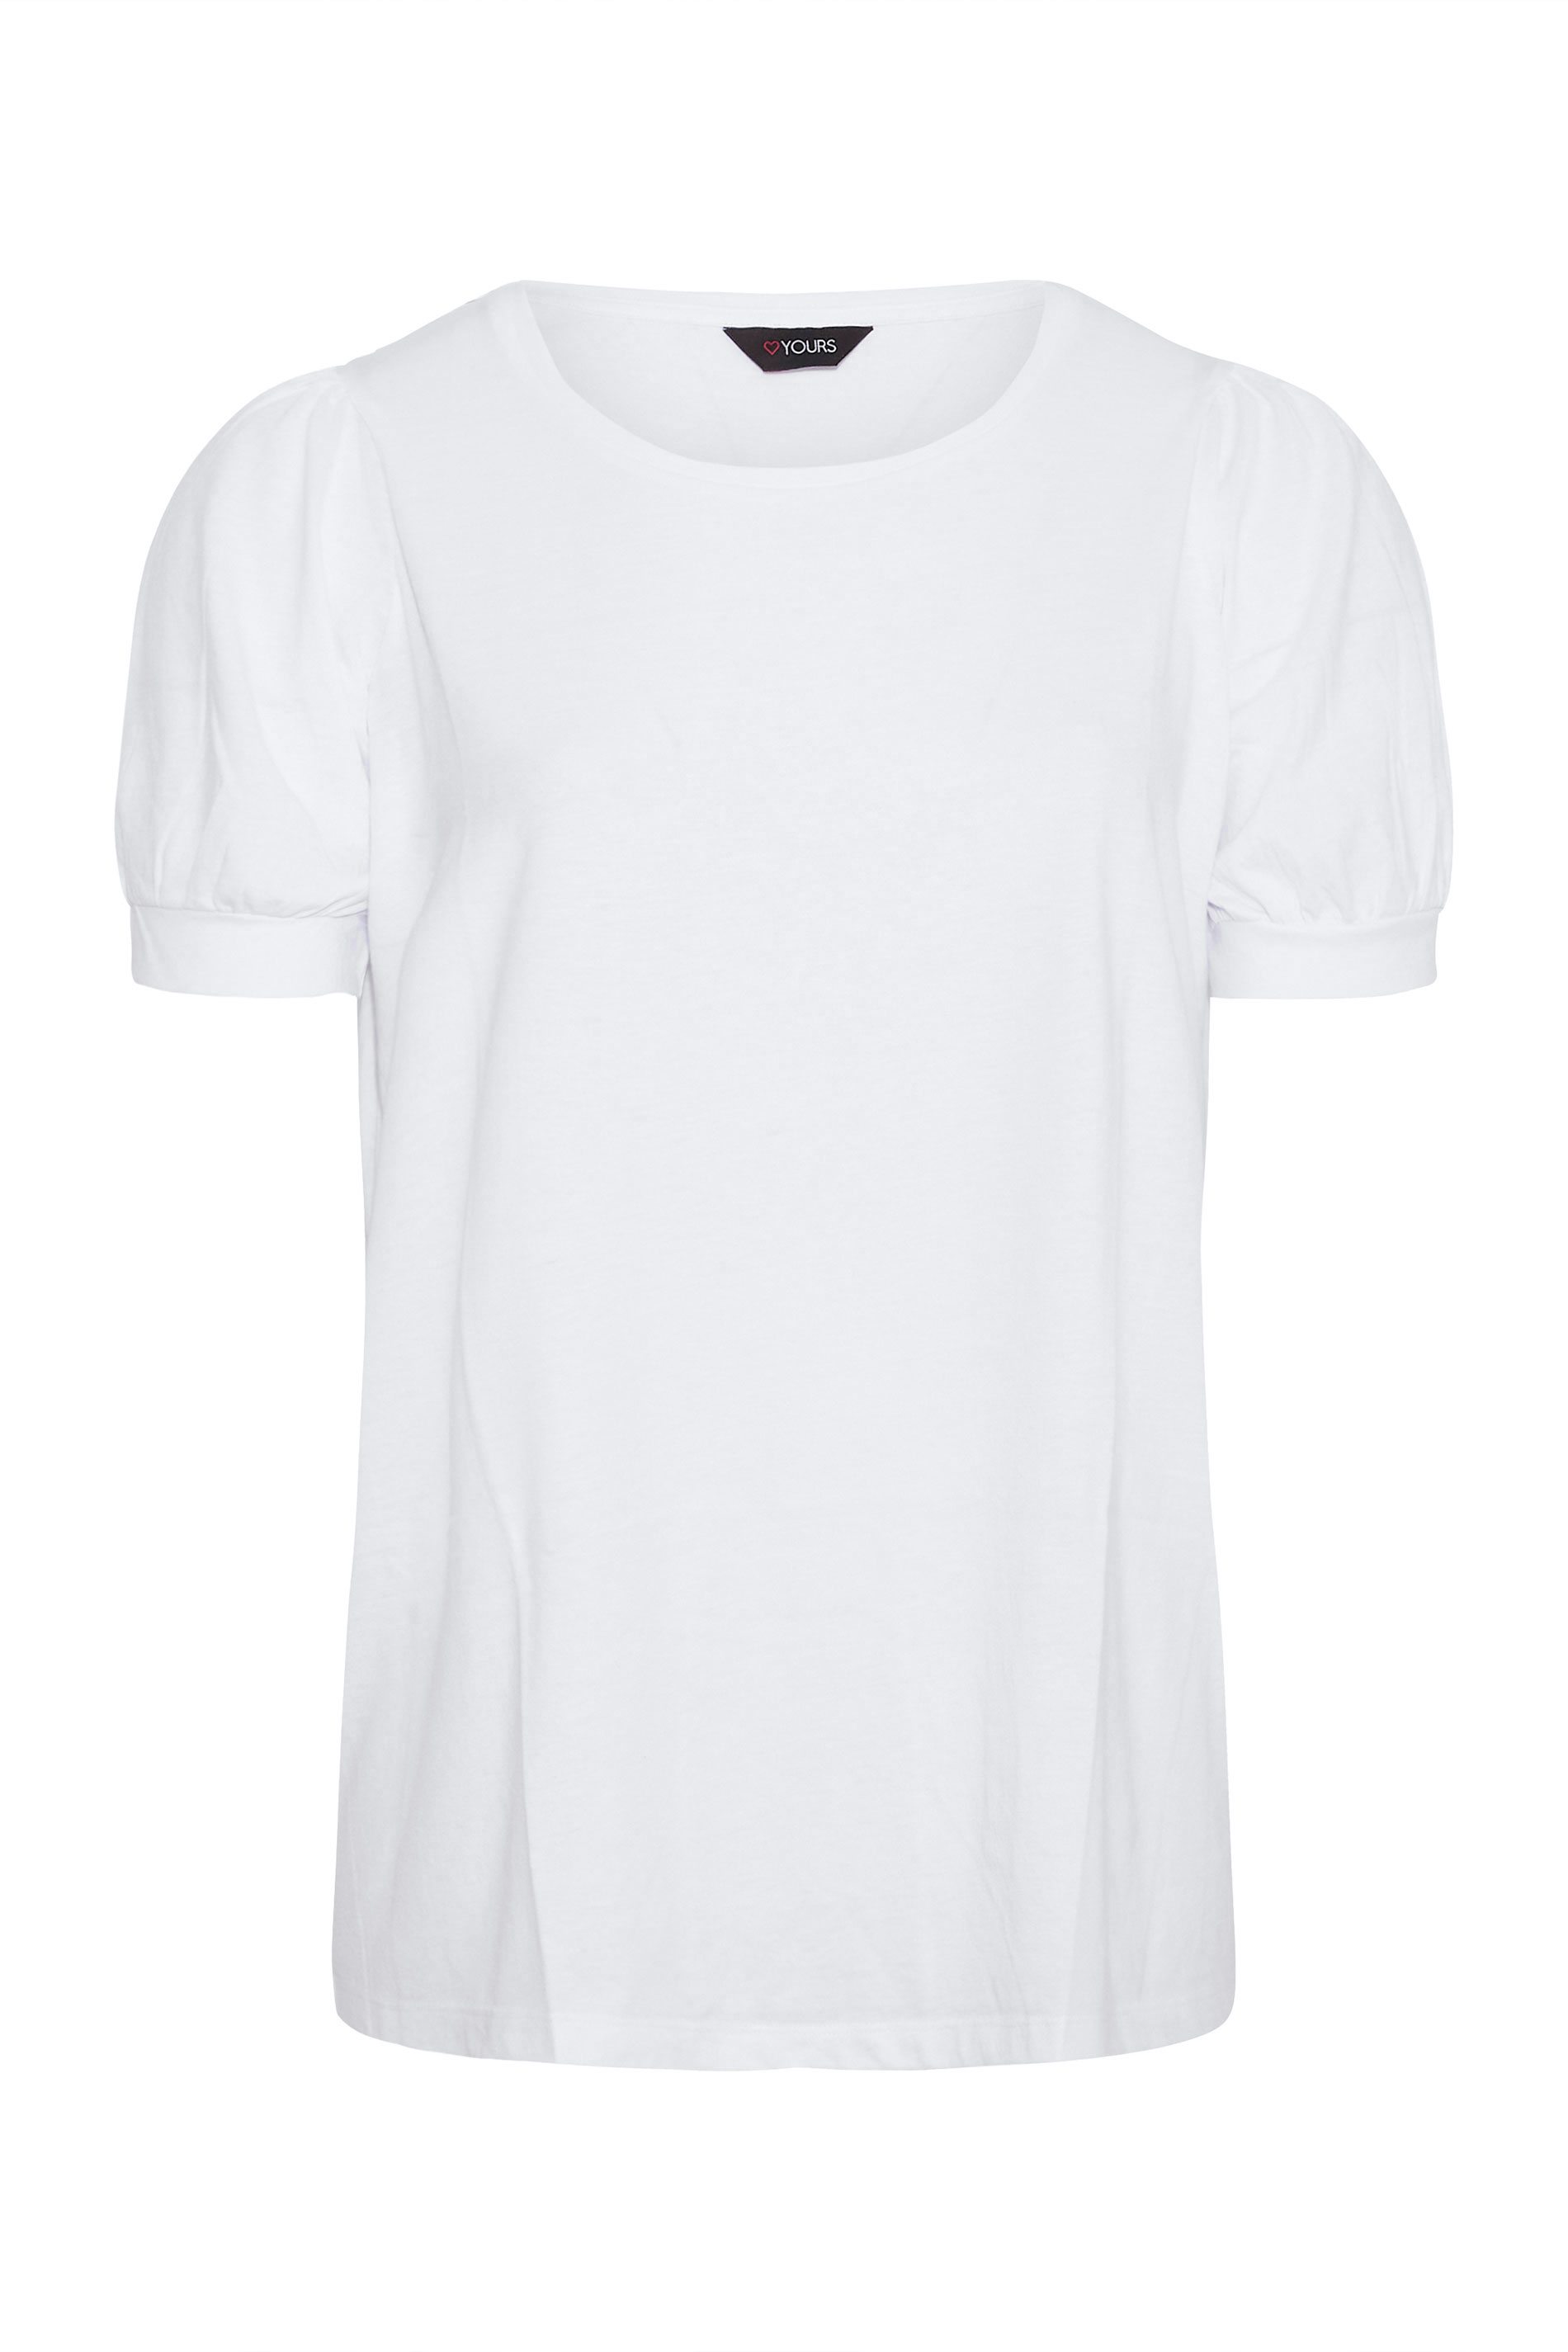 Grande taille  Tops Grande taille  Tops dÉté | T-Shirt Blanc Manches Courtes Bouffantes - WO70904